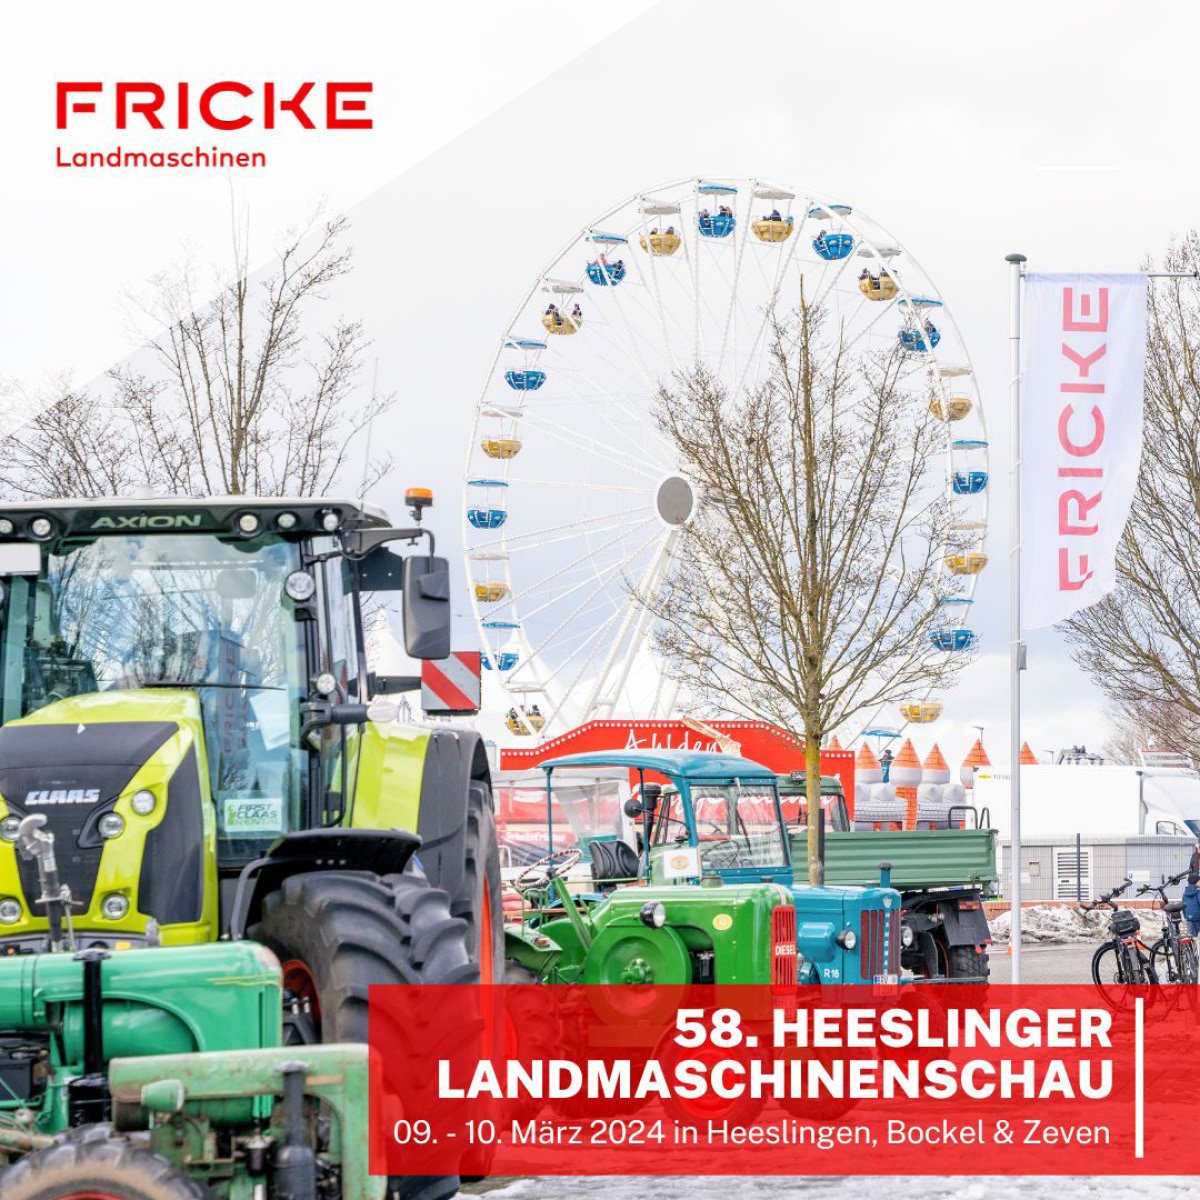 FRICKE Landmaschinenschau